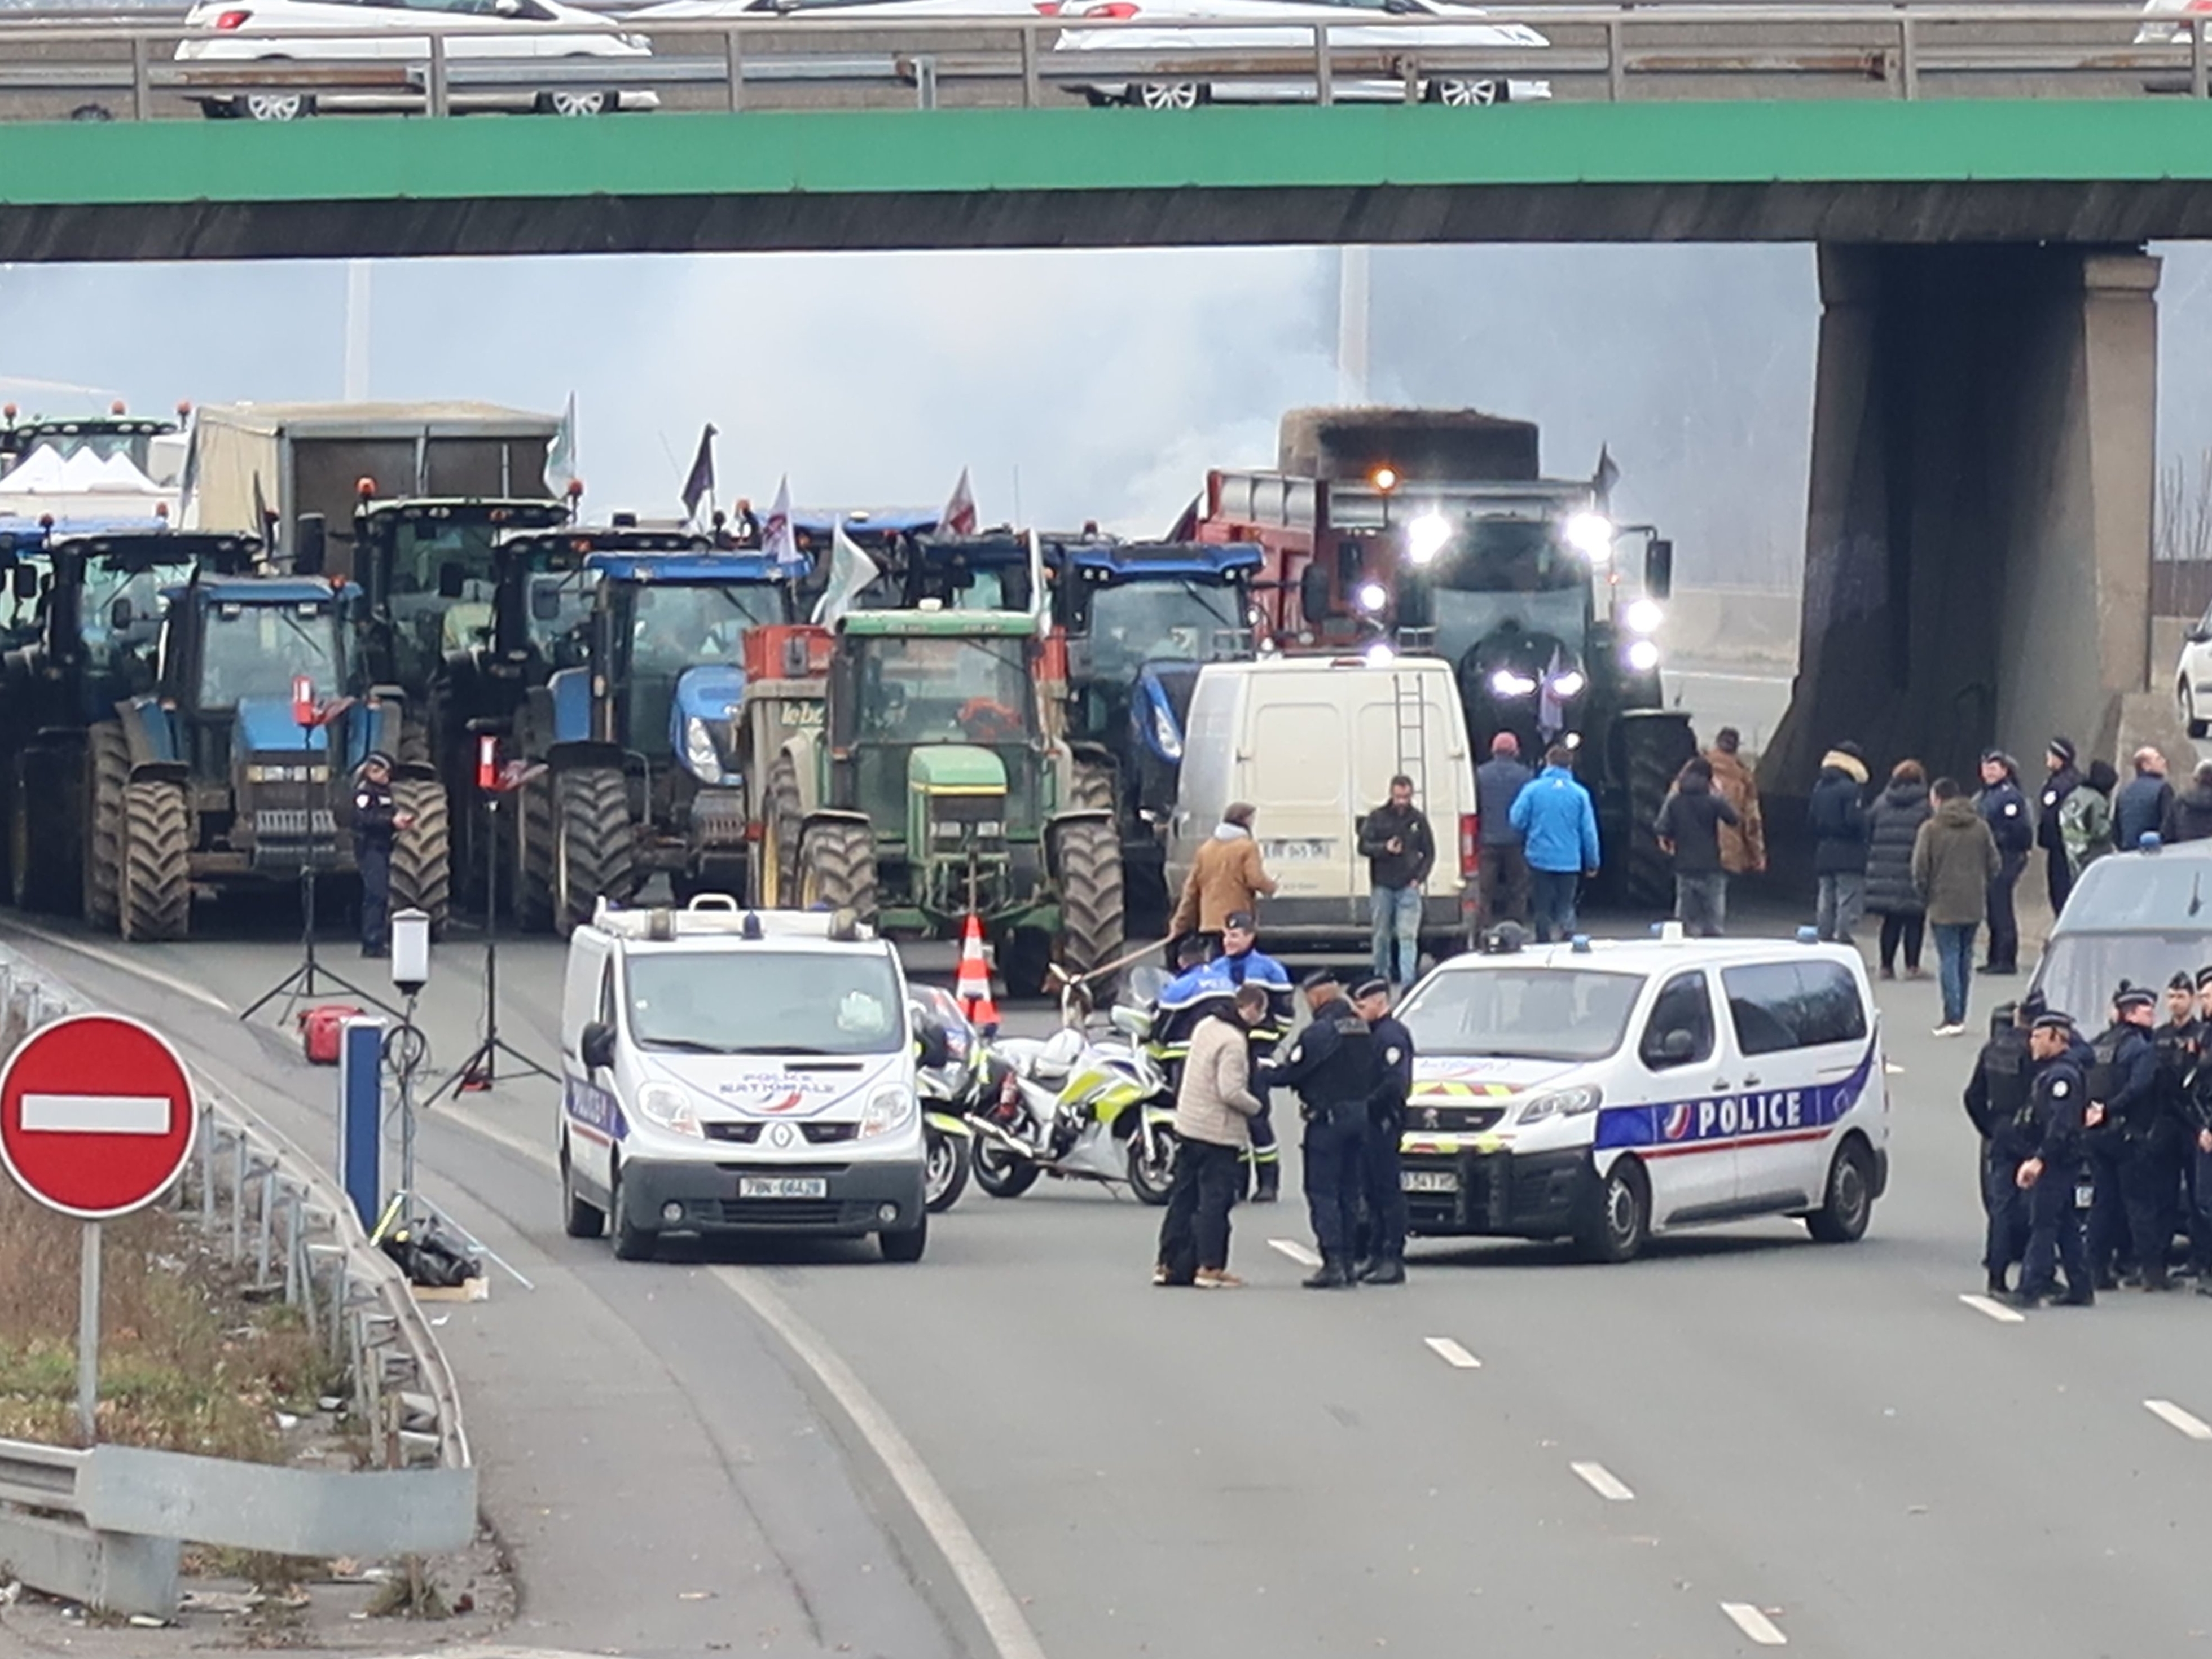 Argenteuil (Vak-d'Oise), mercredi 31 janvier. Plusieurs automobilistes ont tenté de forcer le barrage des agriculteurs sur l'A15. L'un d'eux a été placé en garde à vue pour avoir en plus blessé une policière. LP/T.C.